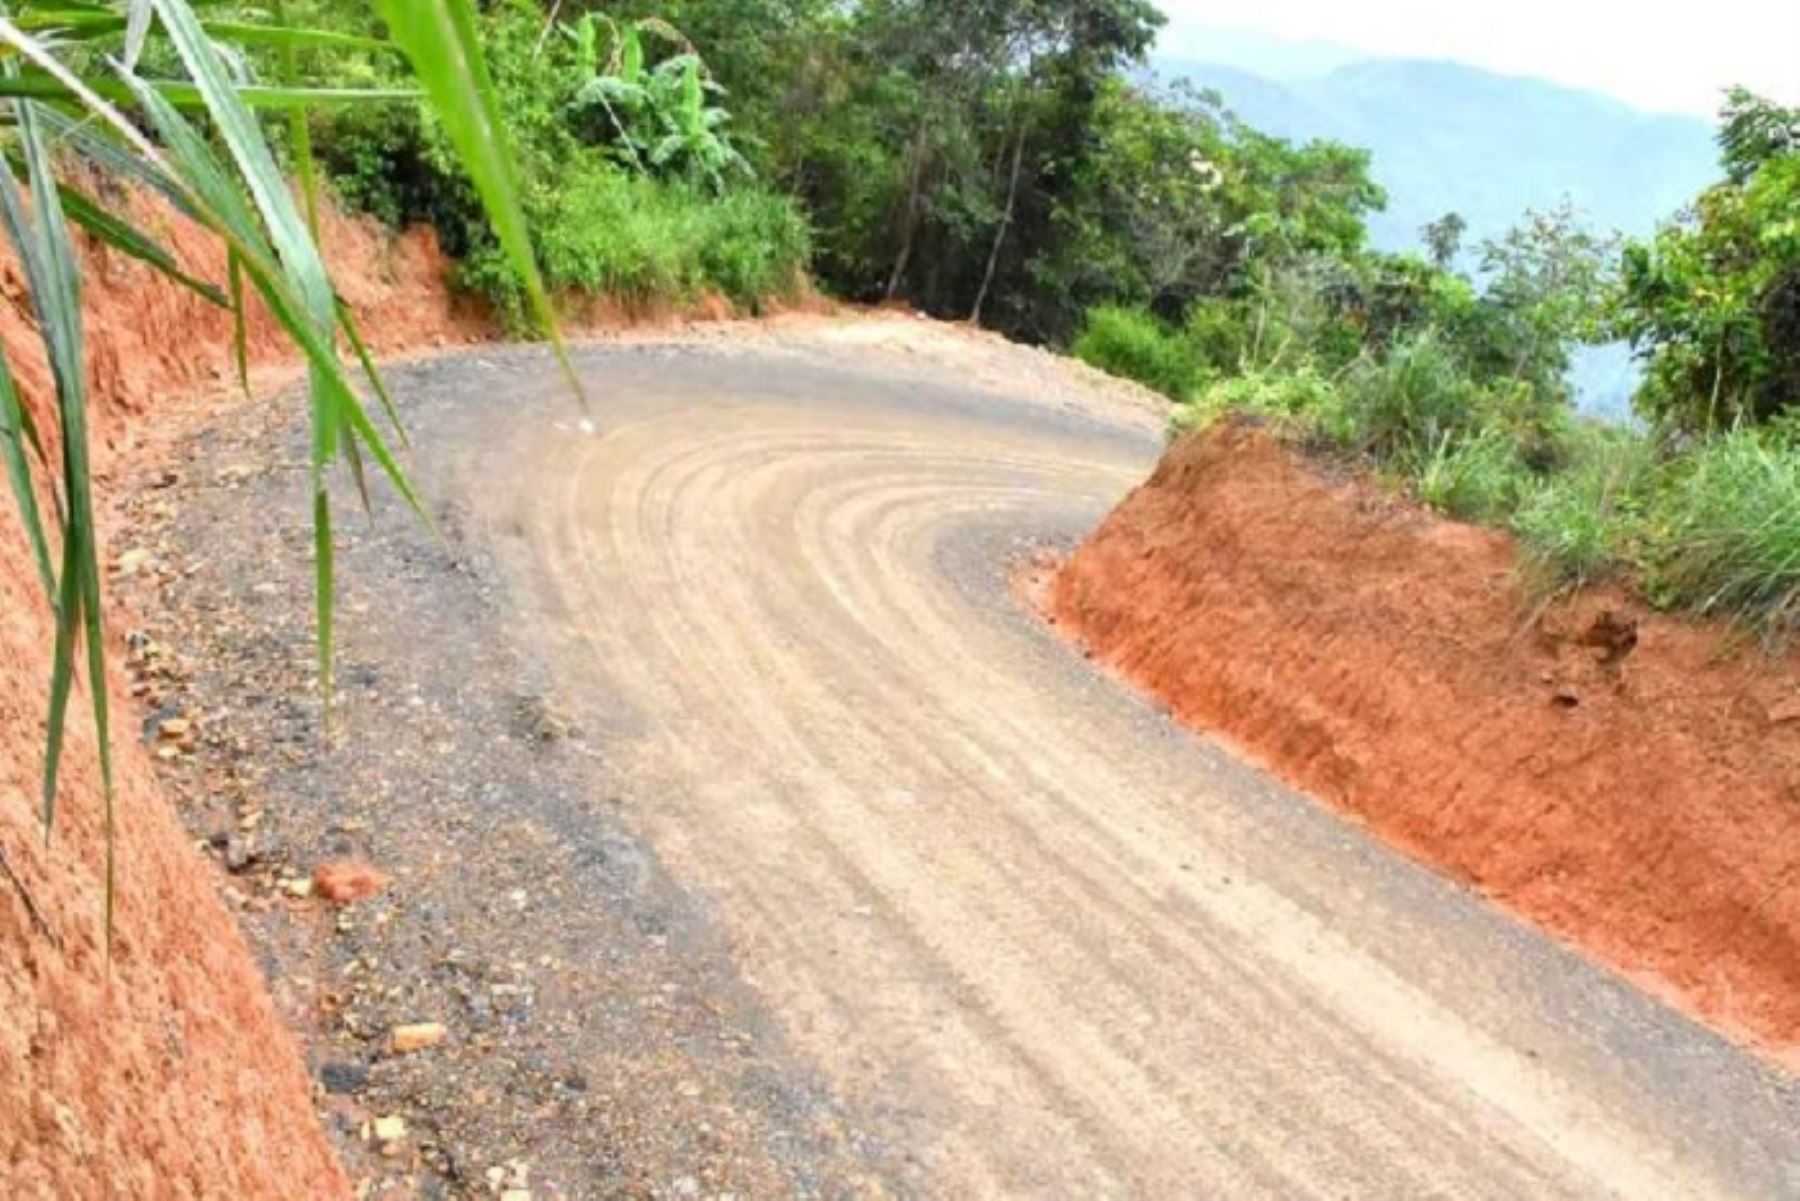 Más de nueve kilómetros de carretera rehabilitada y mejorada fueron entregados a pobladores del distrito de Río Tambo, ubicado en el Valle de los Ríos Apurímac, Ene y Mantaro (Vraem) que une las comunidades de Napati y Anexo Mencuriani, en beneficio de más de 200 familias cacaoteras y cafetaleras.